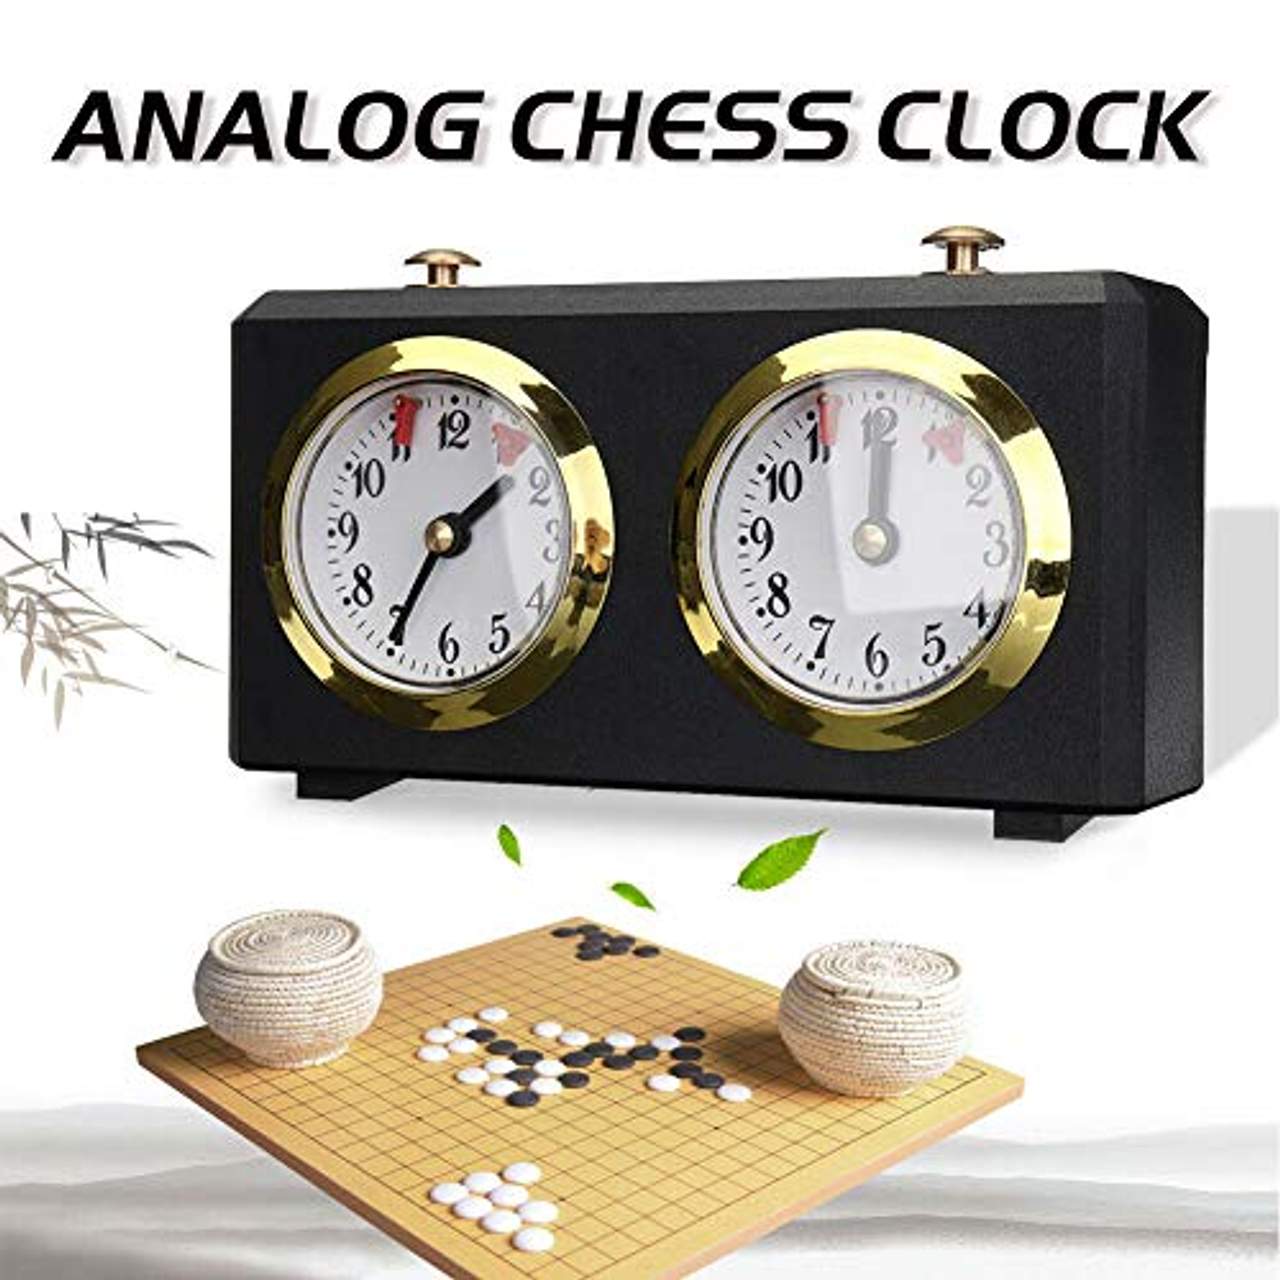 GCDN Schach-Timer Professionelle Schachuhr Spieluhr Timer Analog Uhr Schach-Timer